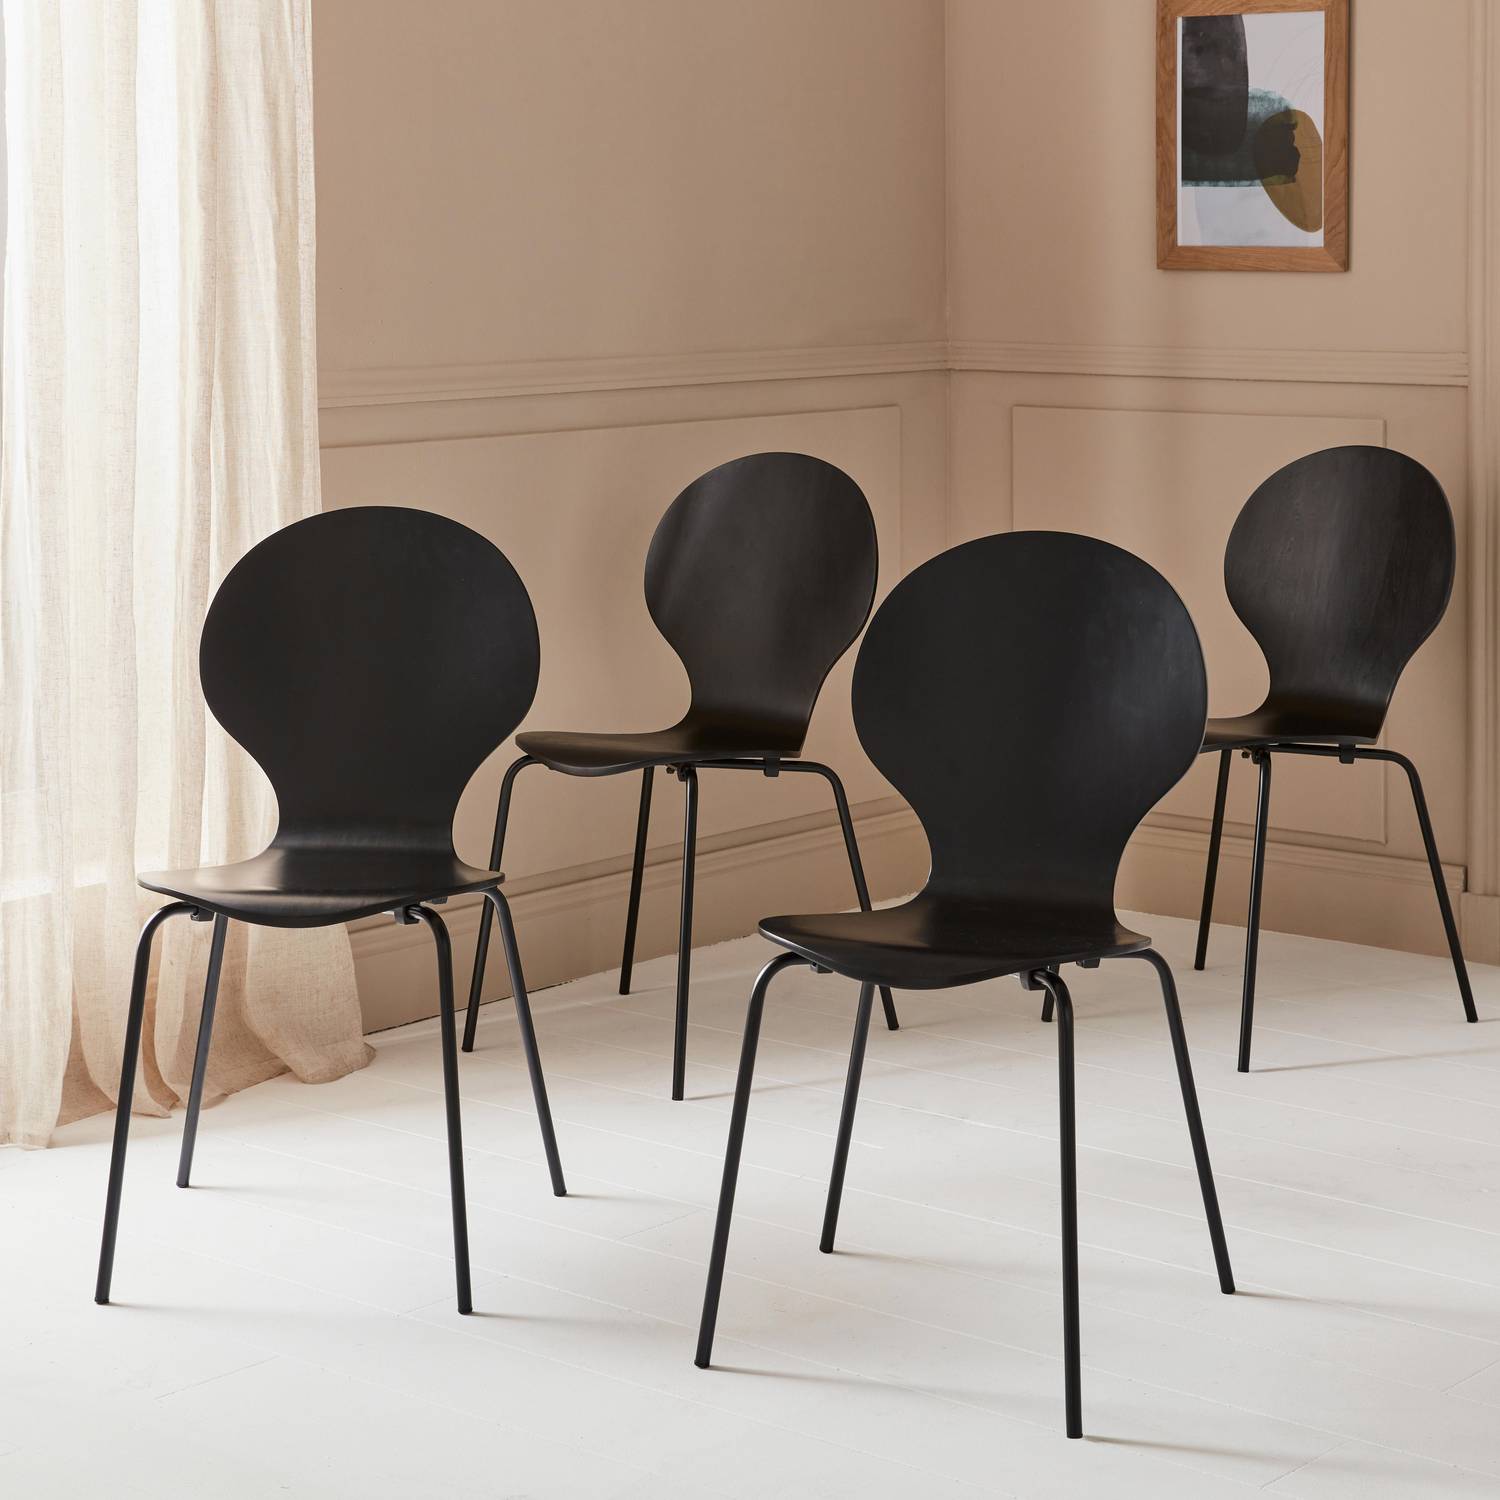 Conjunto de 4 cadeiras empilháveis retro pretas, madeira de hevea e contraplacado, pernas de aço, Naomi, L 43 x P 48 x A 87cm Photo2